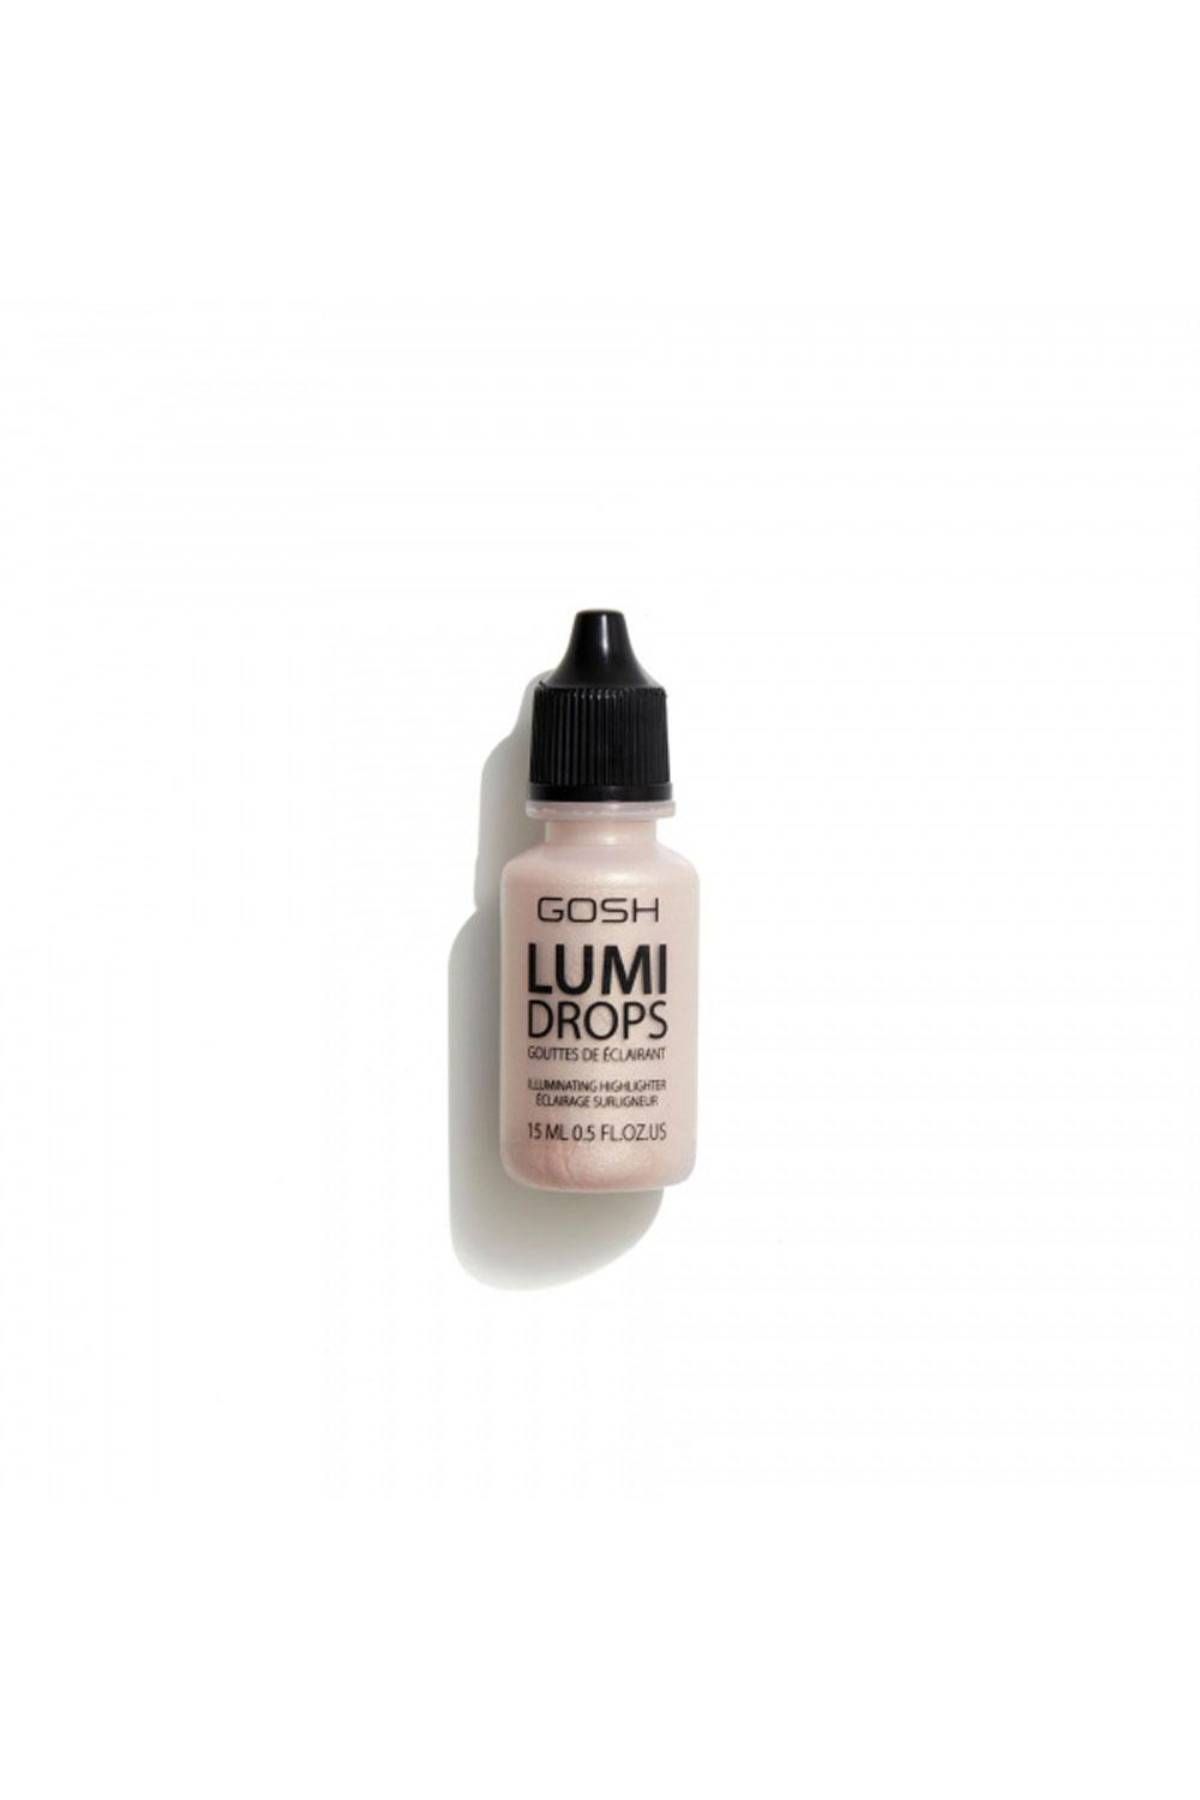 Gosh - Lumi Drops - 002 - Vanilla - 15 ml